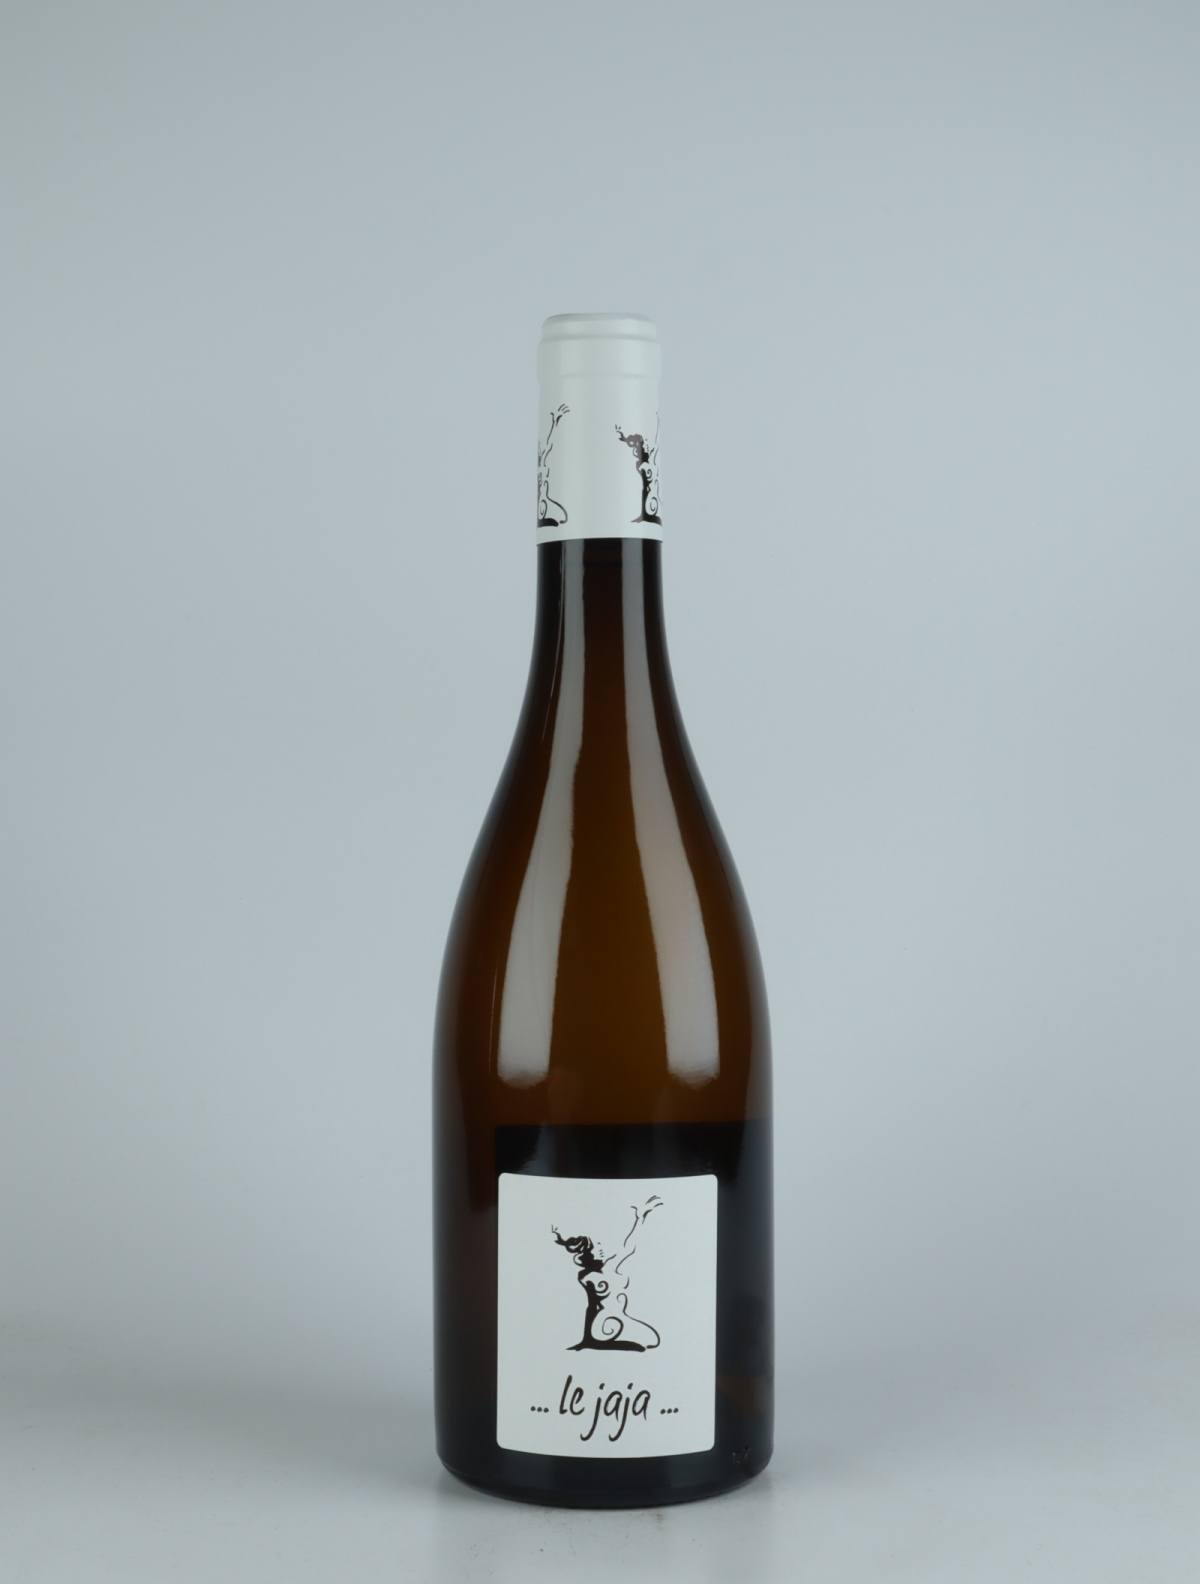 En flaske 2021 Chignin - Le Jaja Hvidvin fra Gilles Berlioz, Savoie i Frankrig